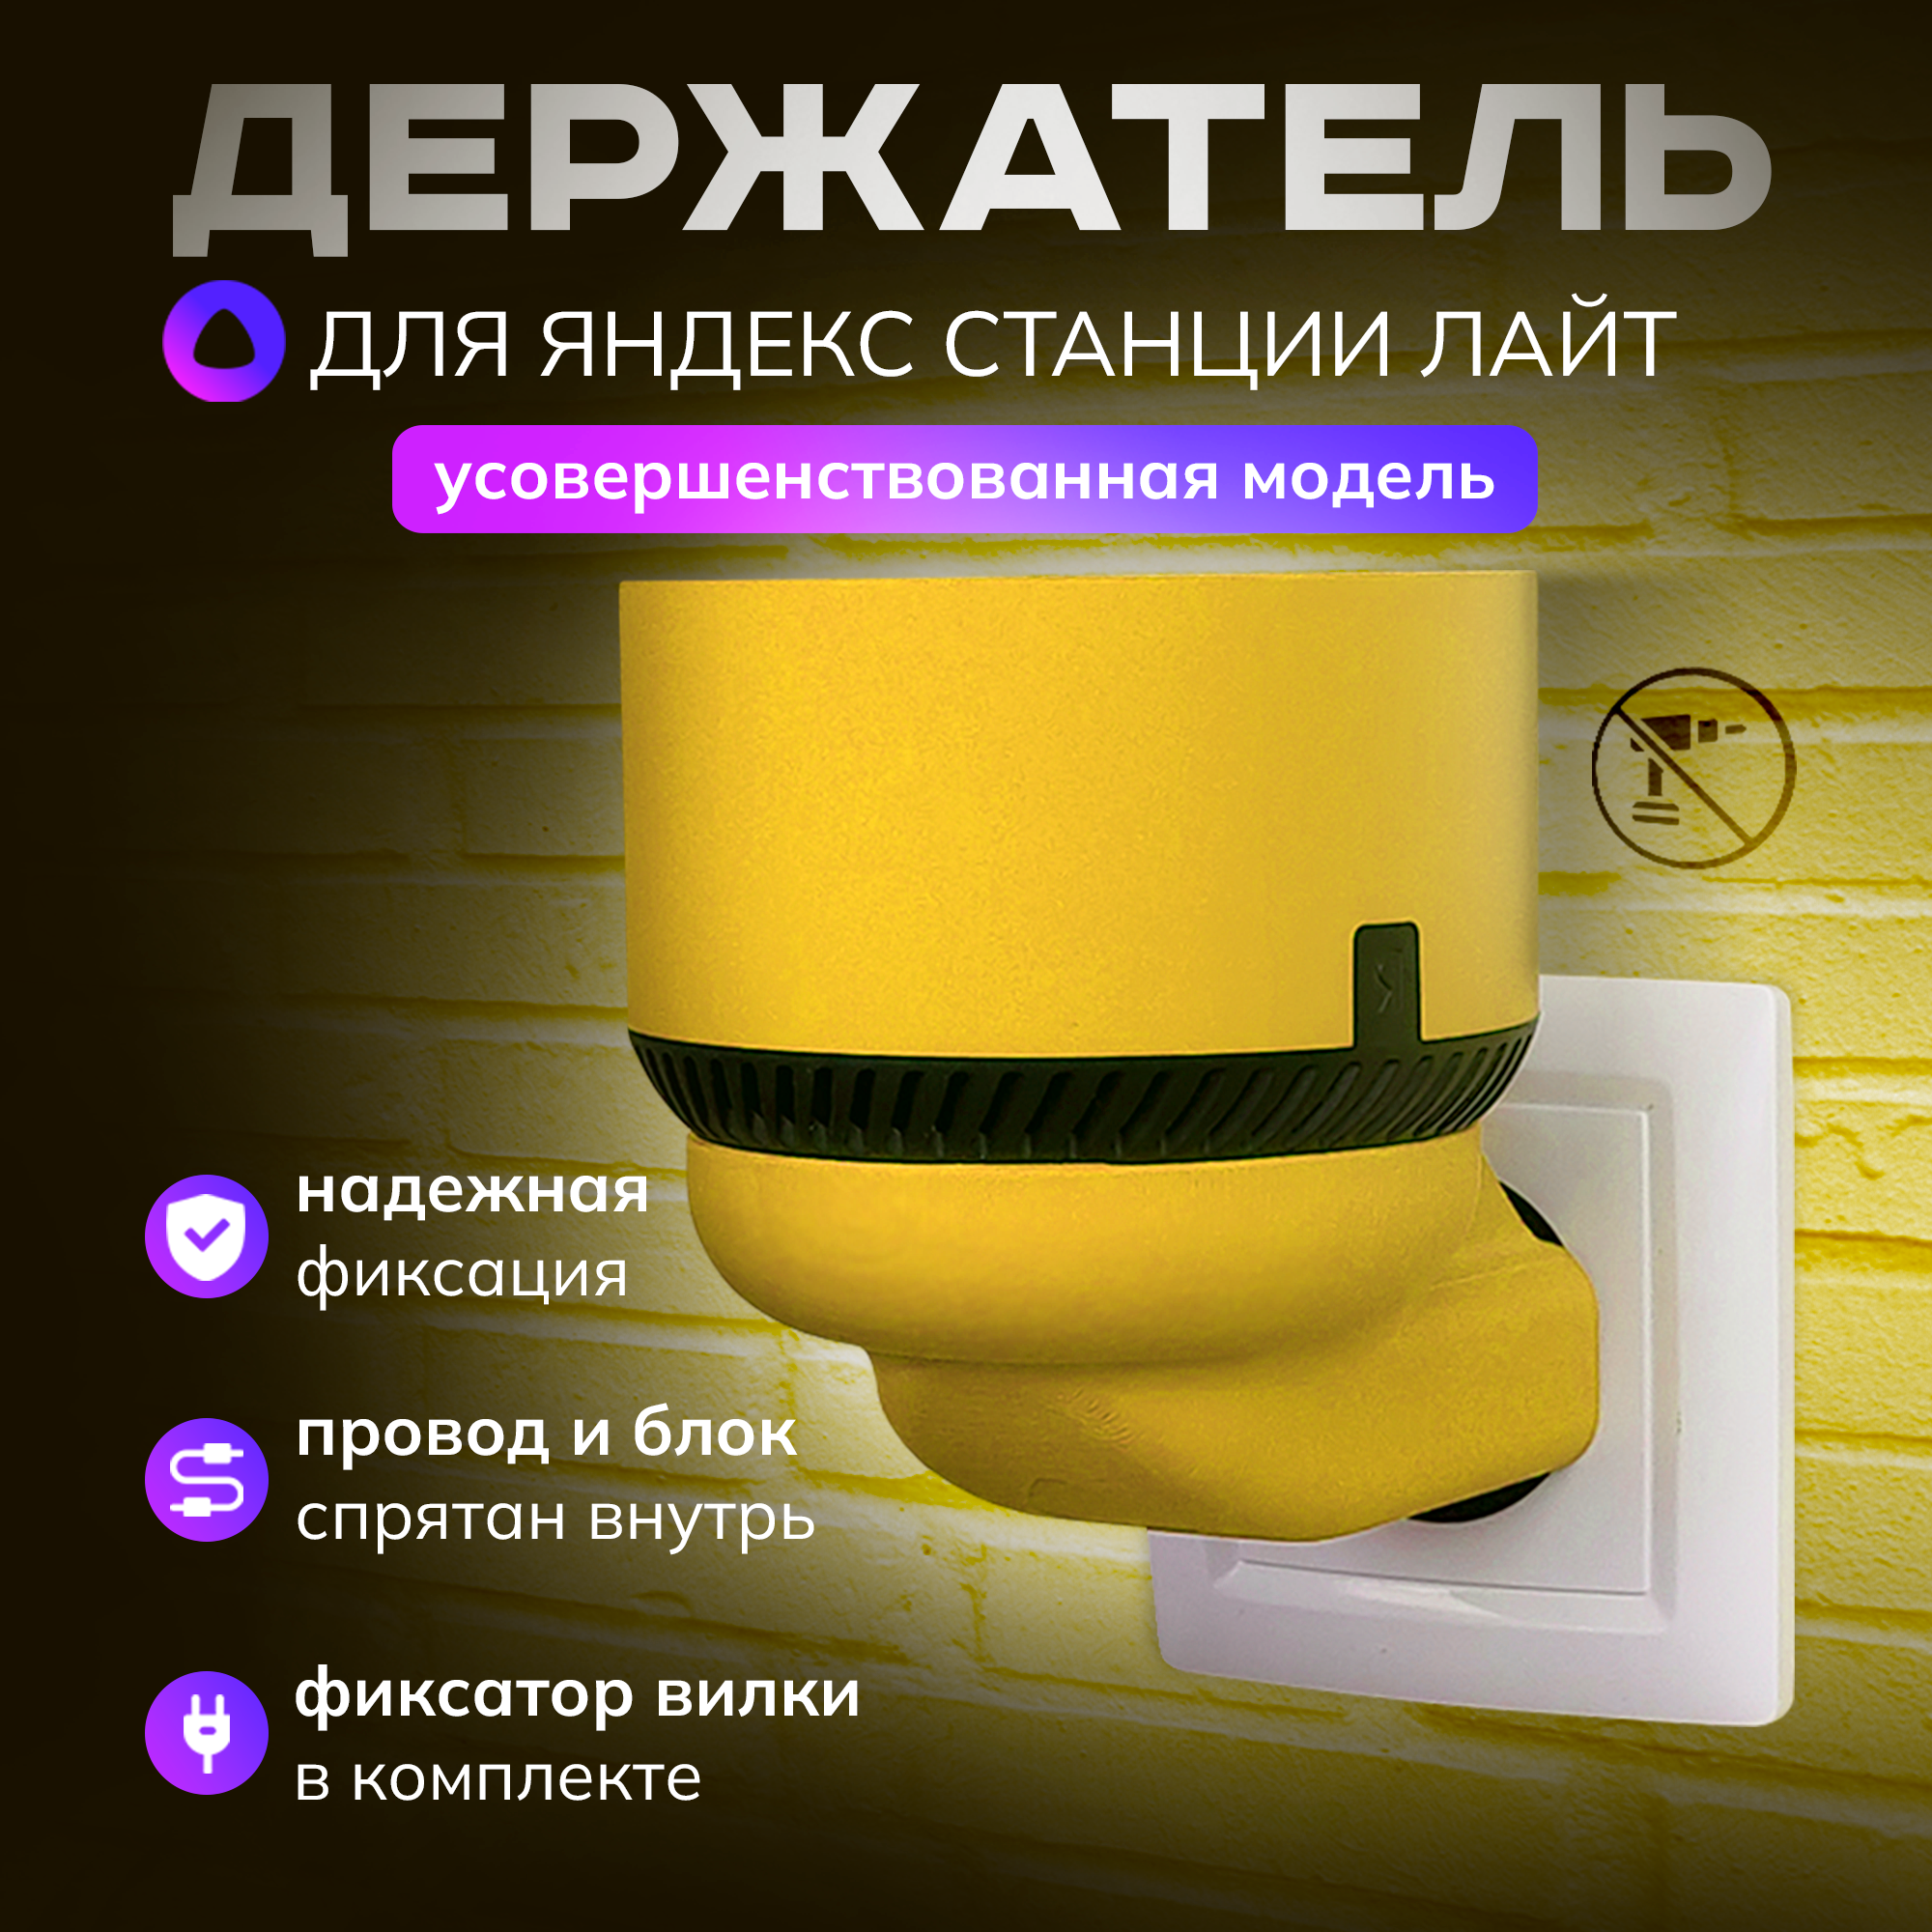 Держатель для Алисы Лайт, подставка колонки Яндекс станции light в розетку, лимон